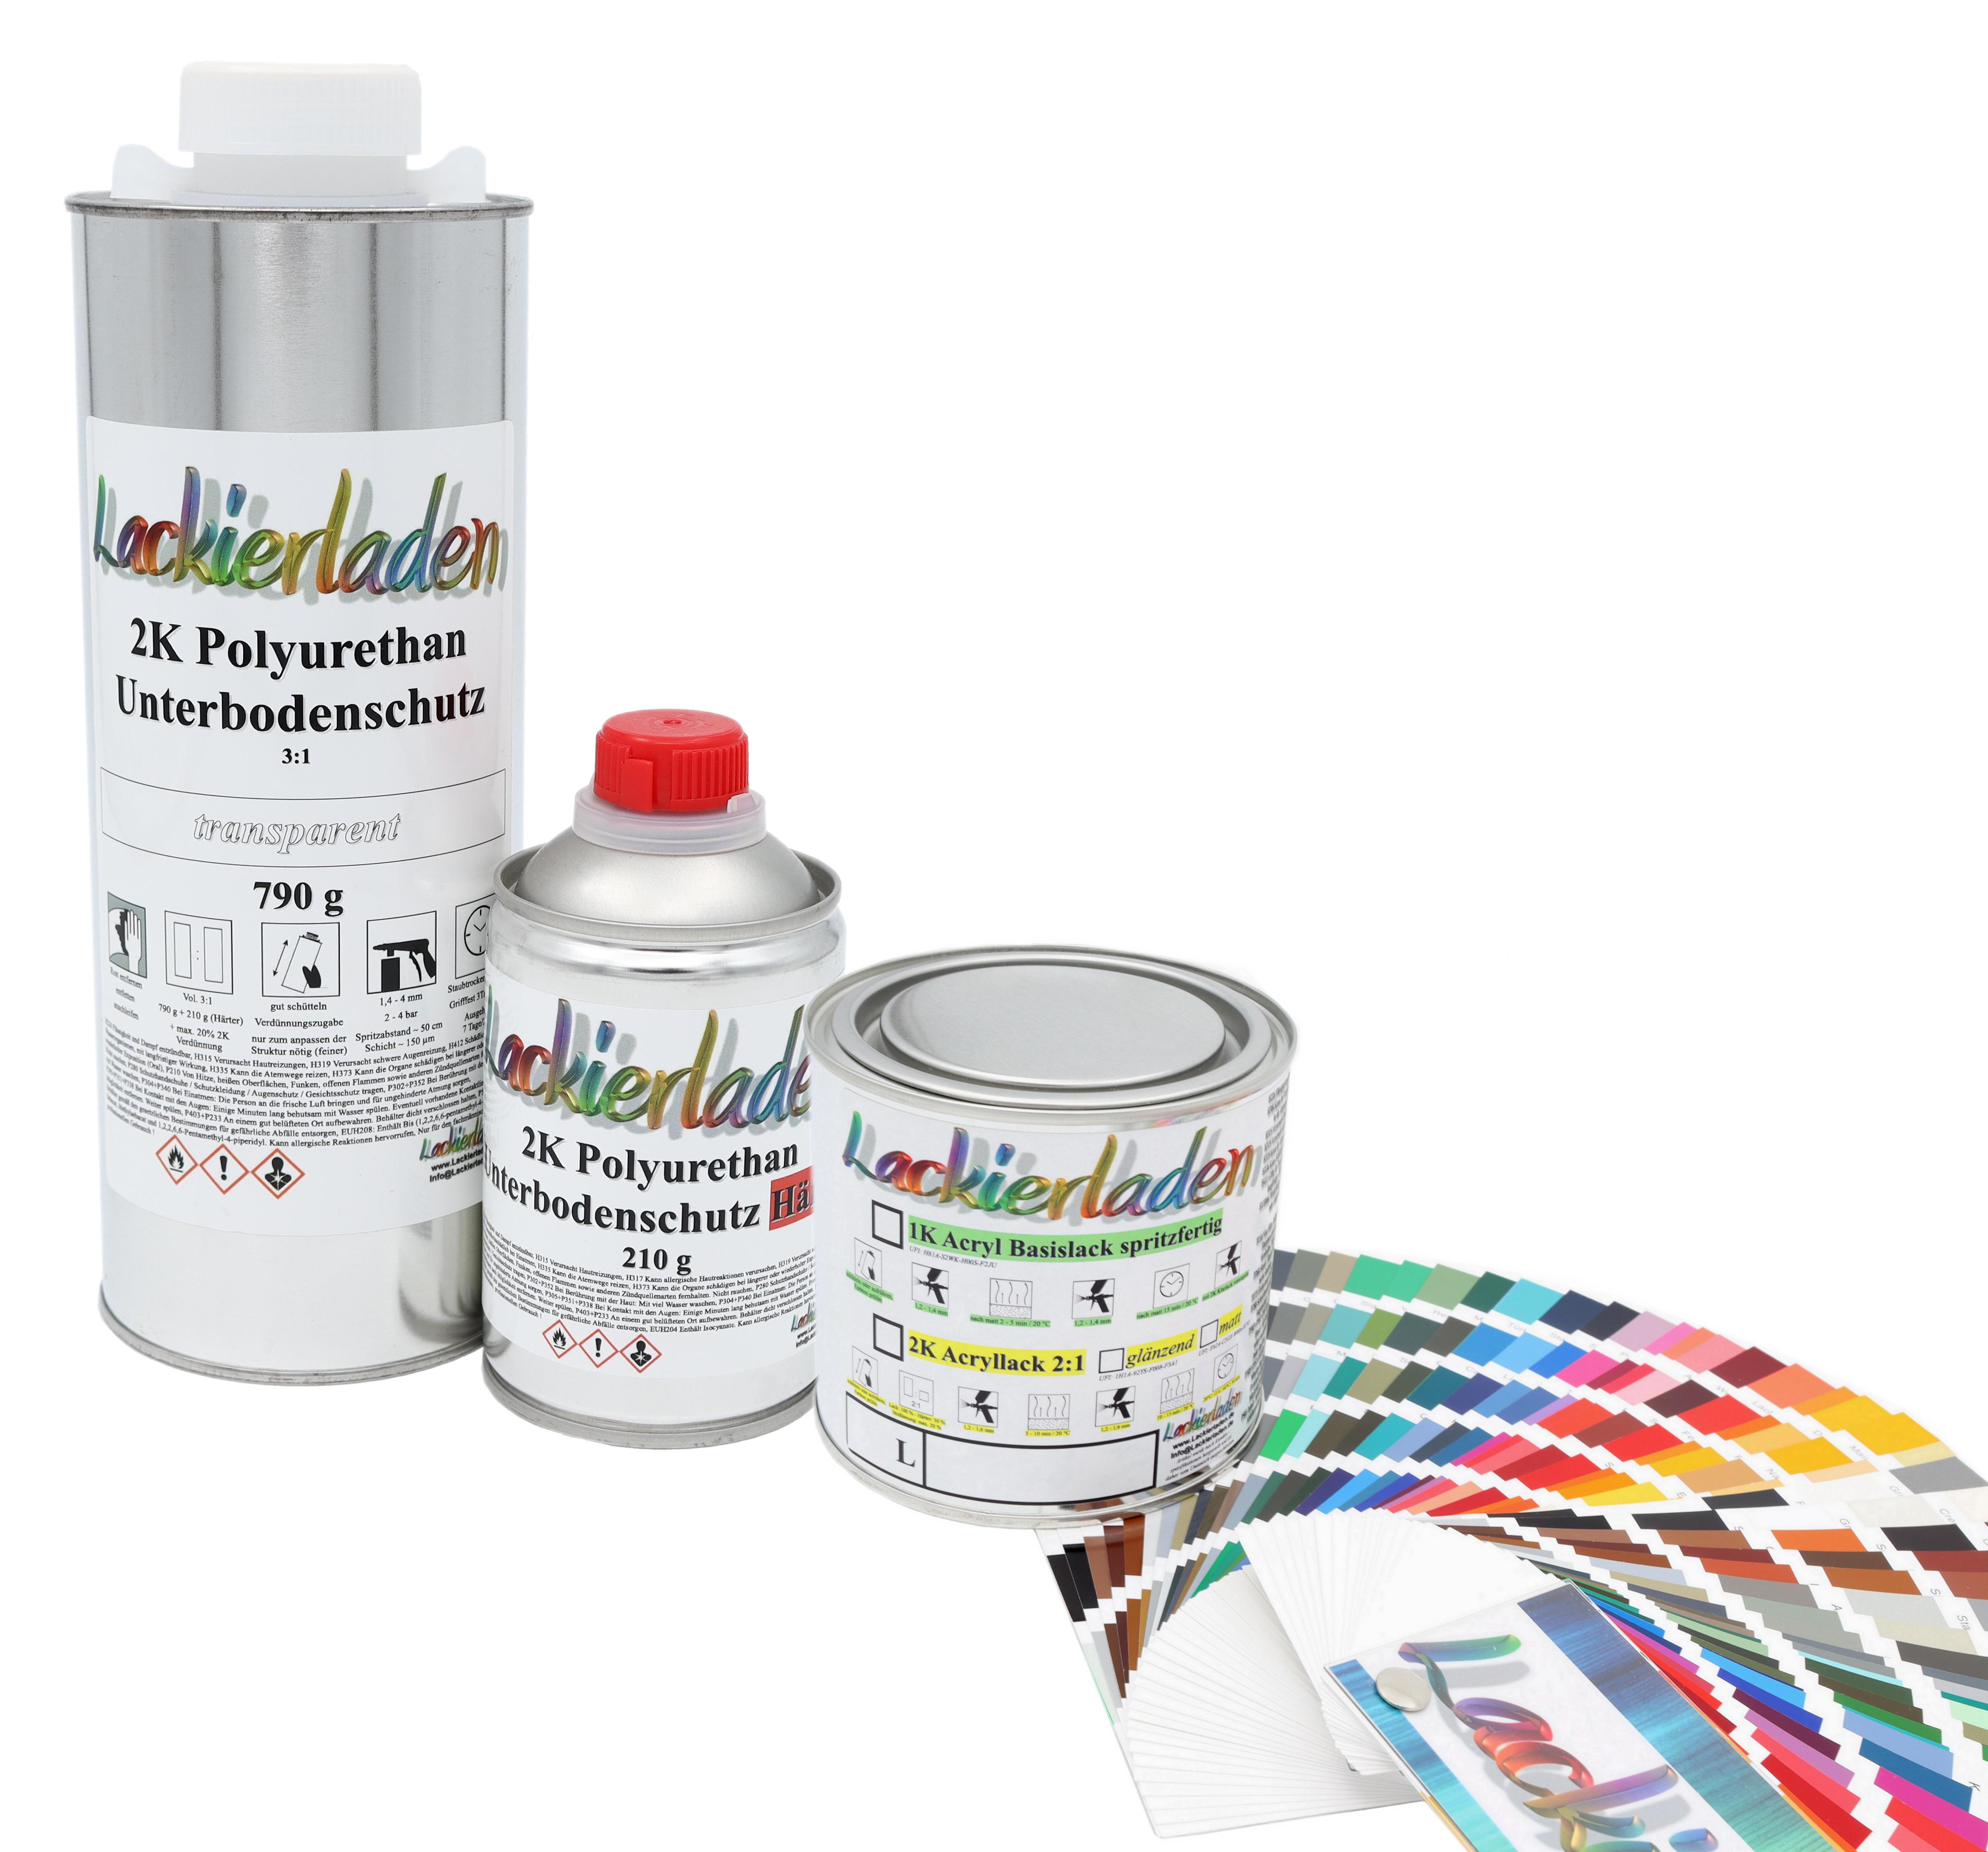 2K Polyurethan Unterbodenschutz Farbcode inkl. Härter 3:1 790 g + 210 g + 100 g